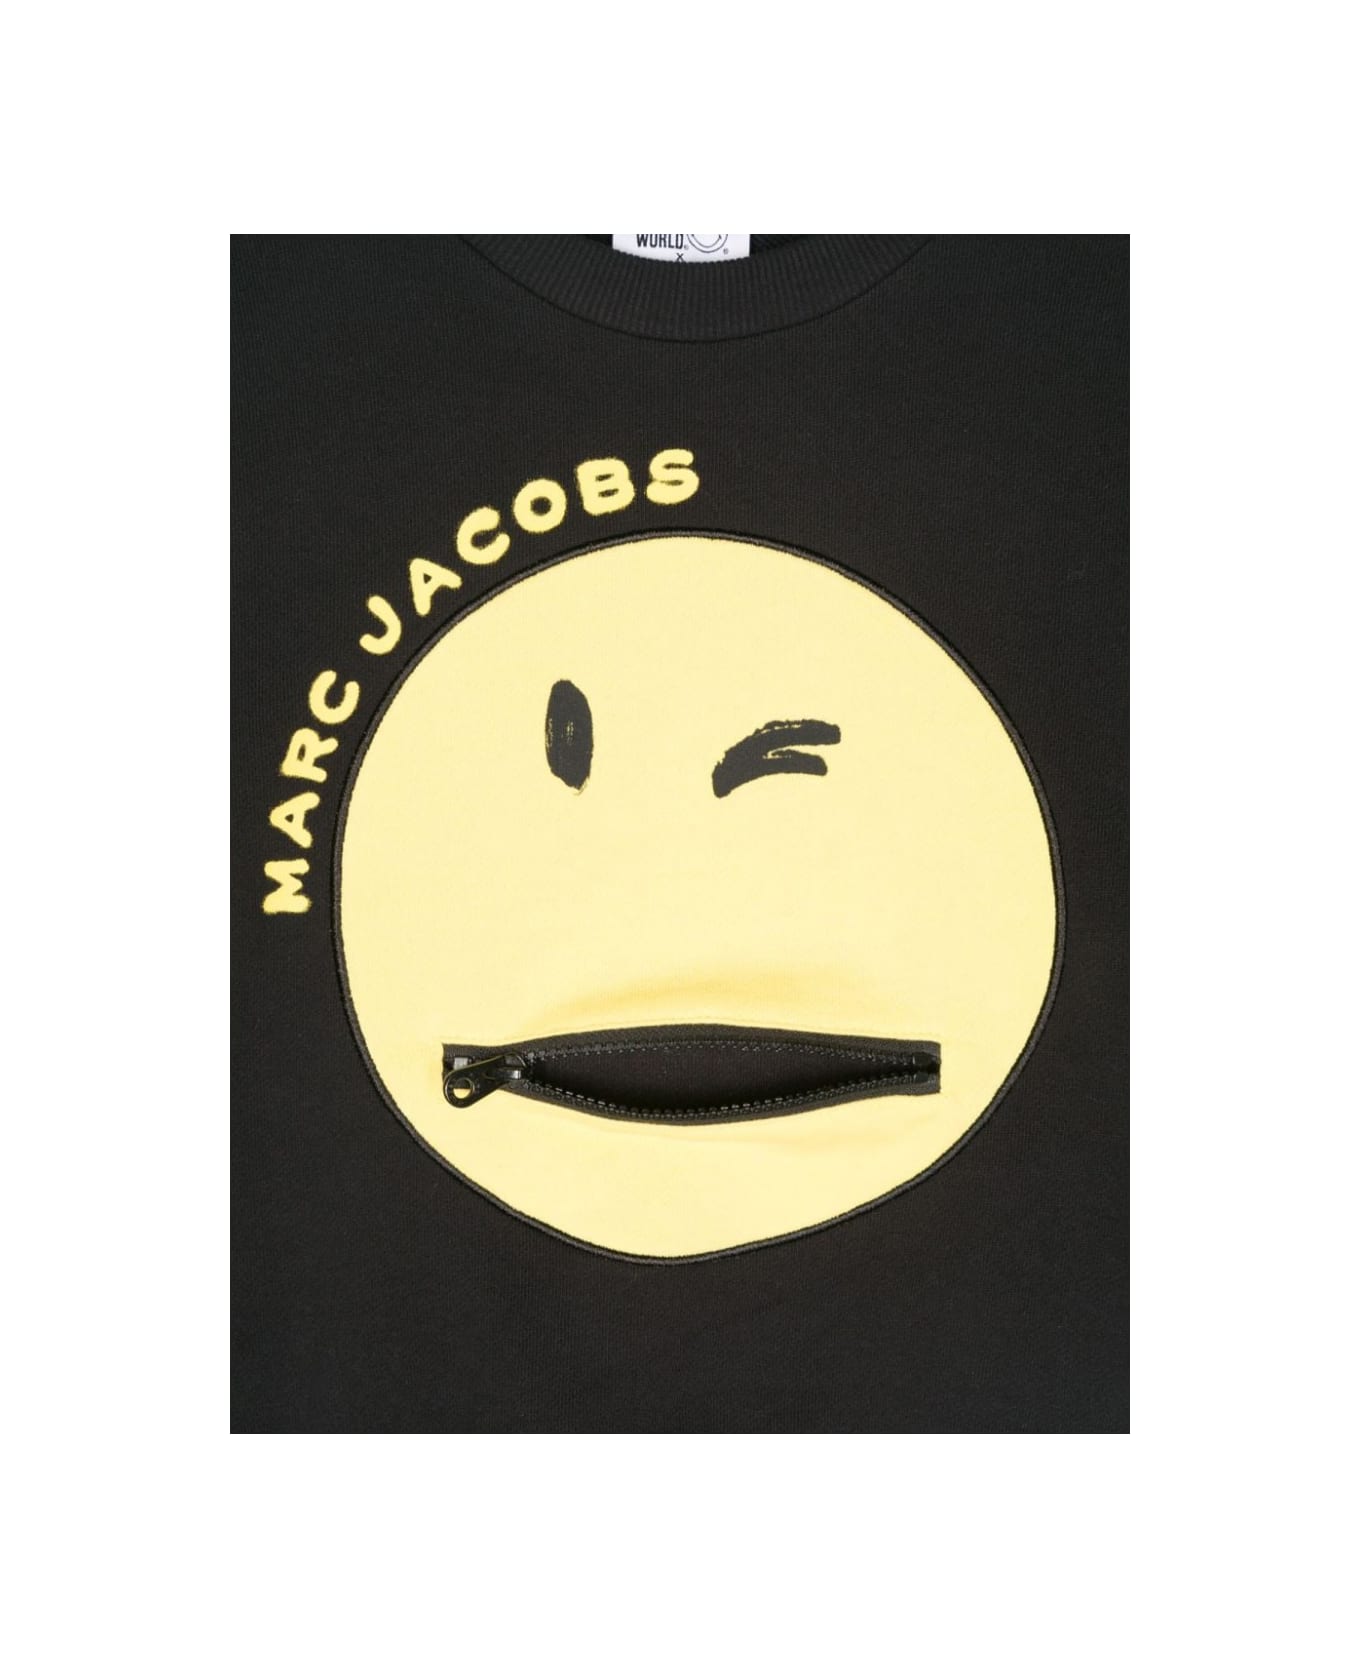 Marc Jacobs Felpa - BLACK ニットウェア＆スウェットシャツ